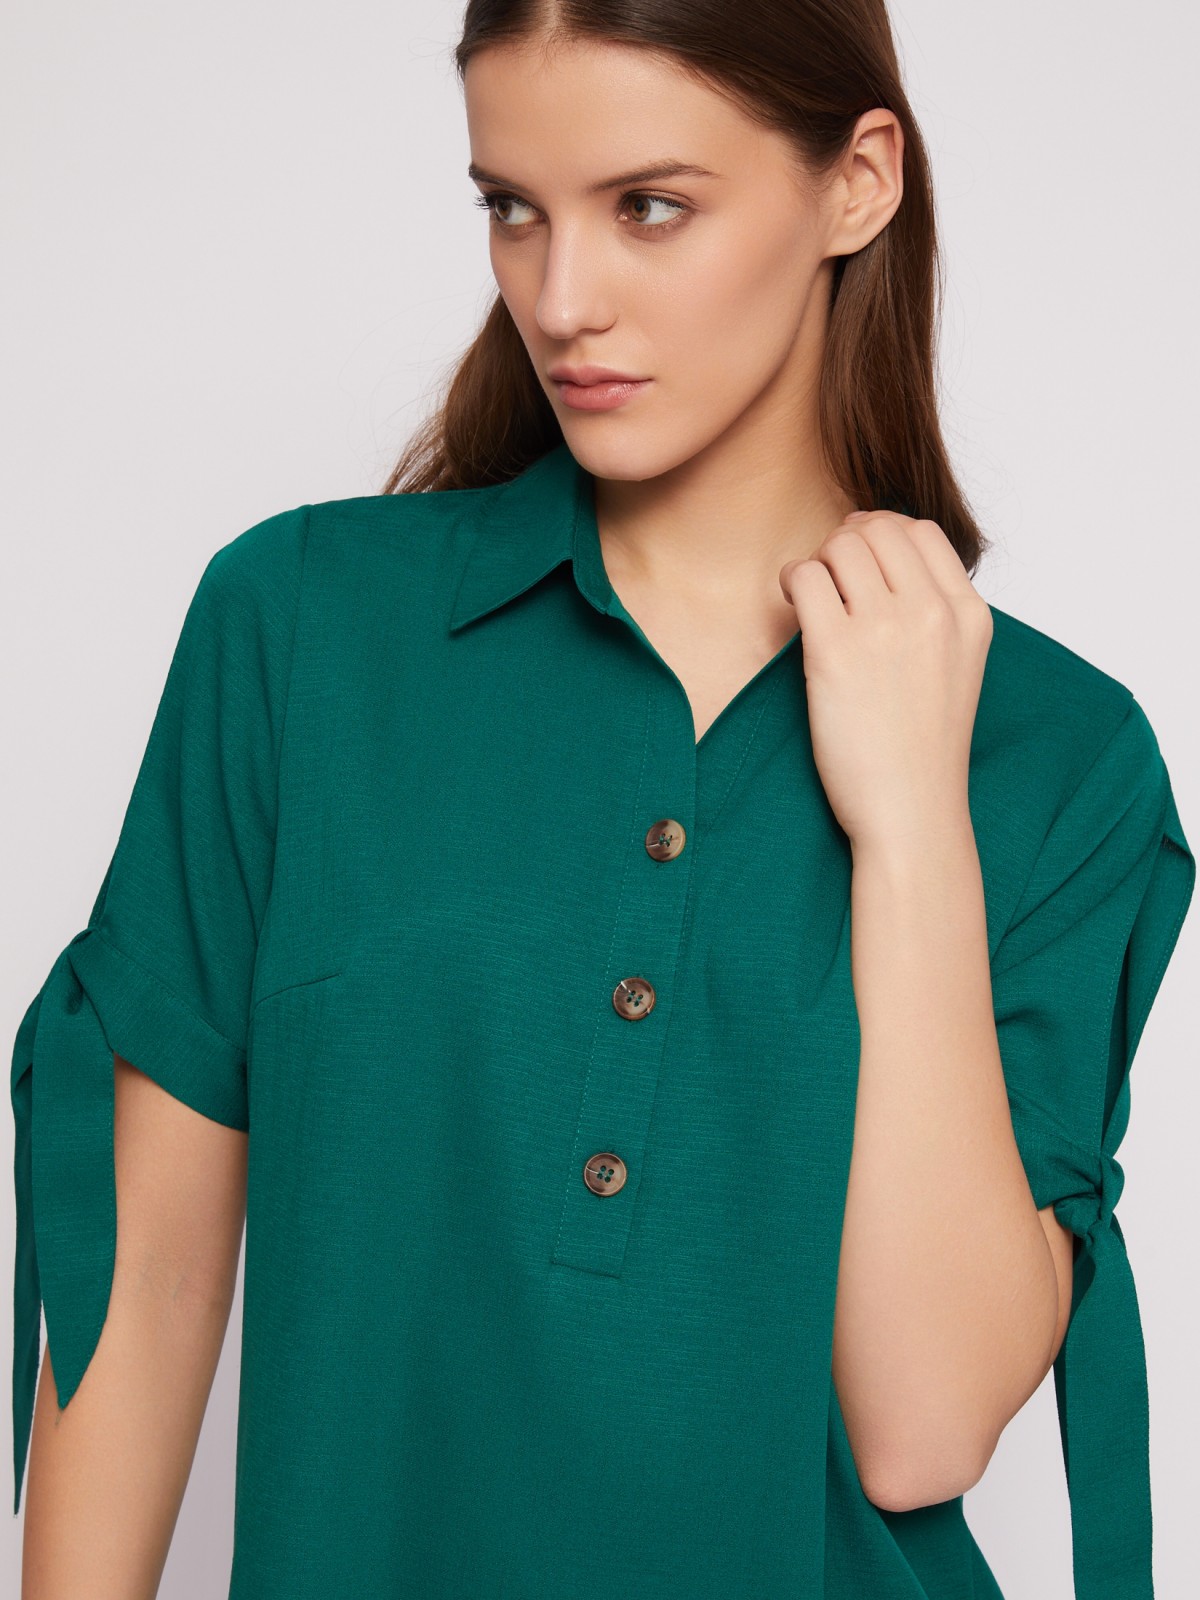 Платье-рубашка мини с акцентом на рукавах zolla 024218239333, цвет темно-зеленый, размер XXXL - фото 4